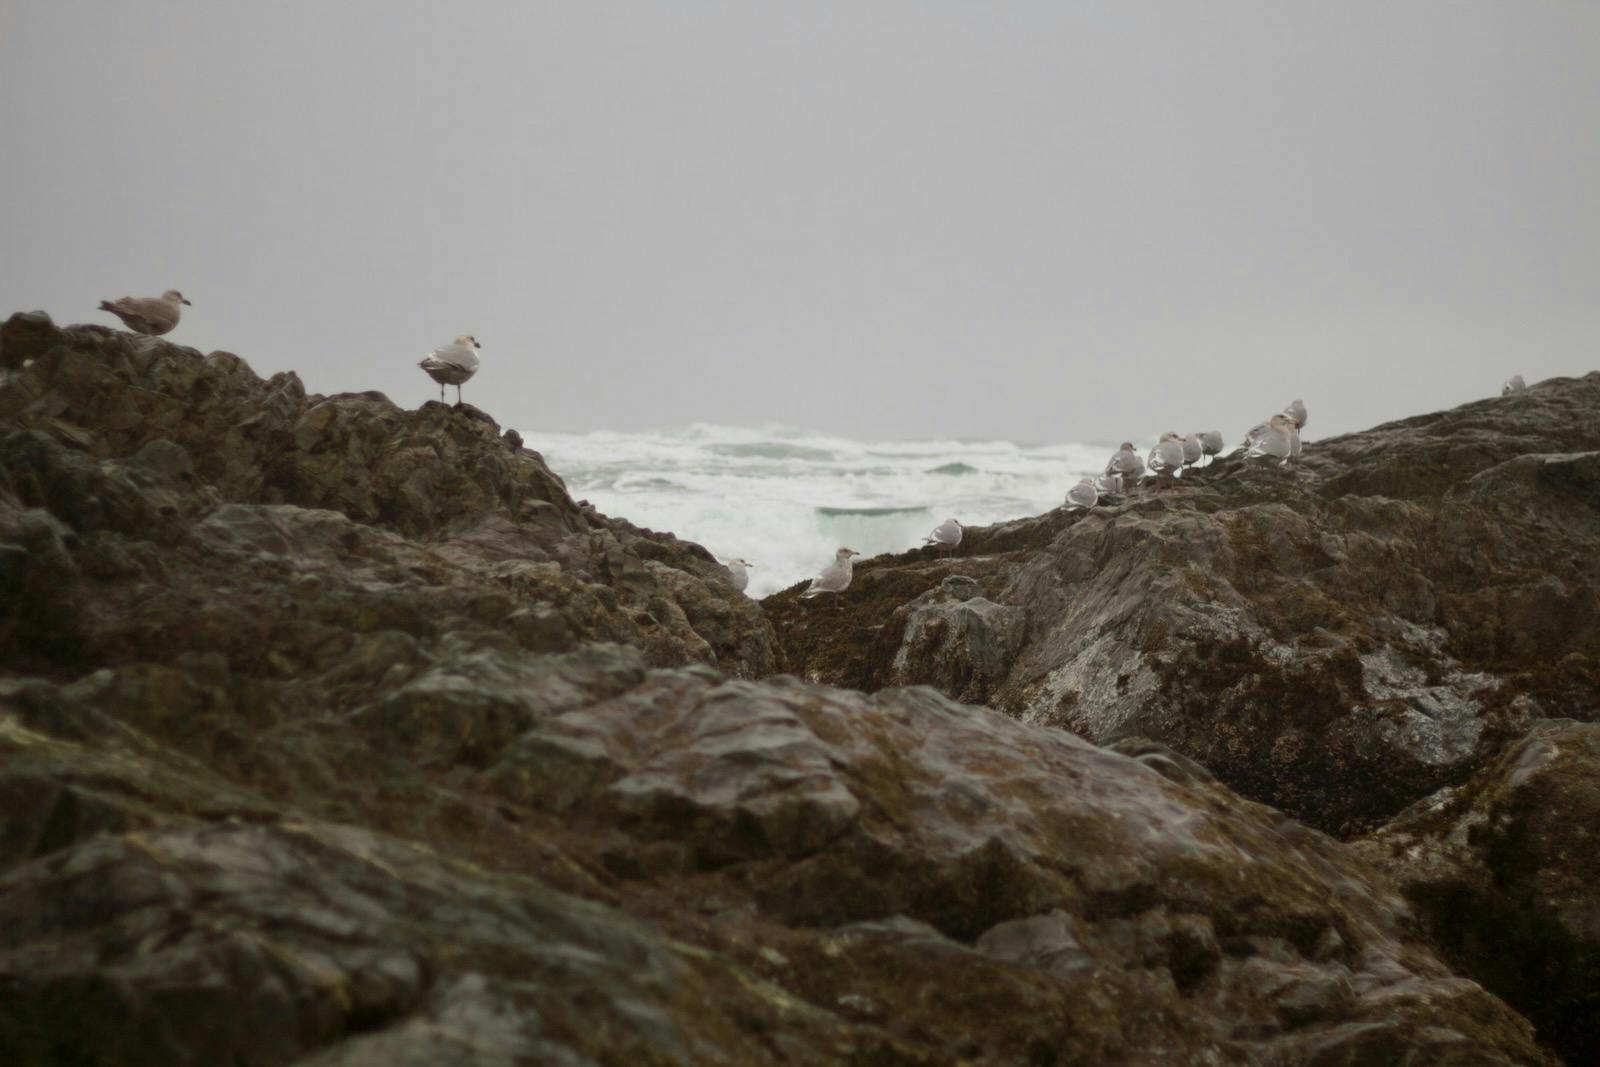 seagulls on rock